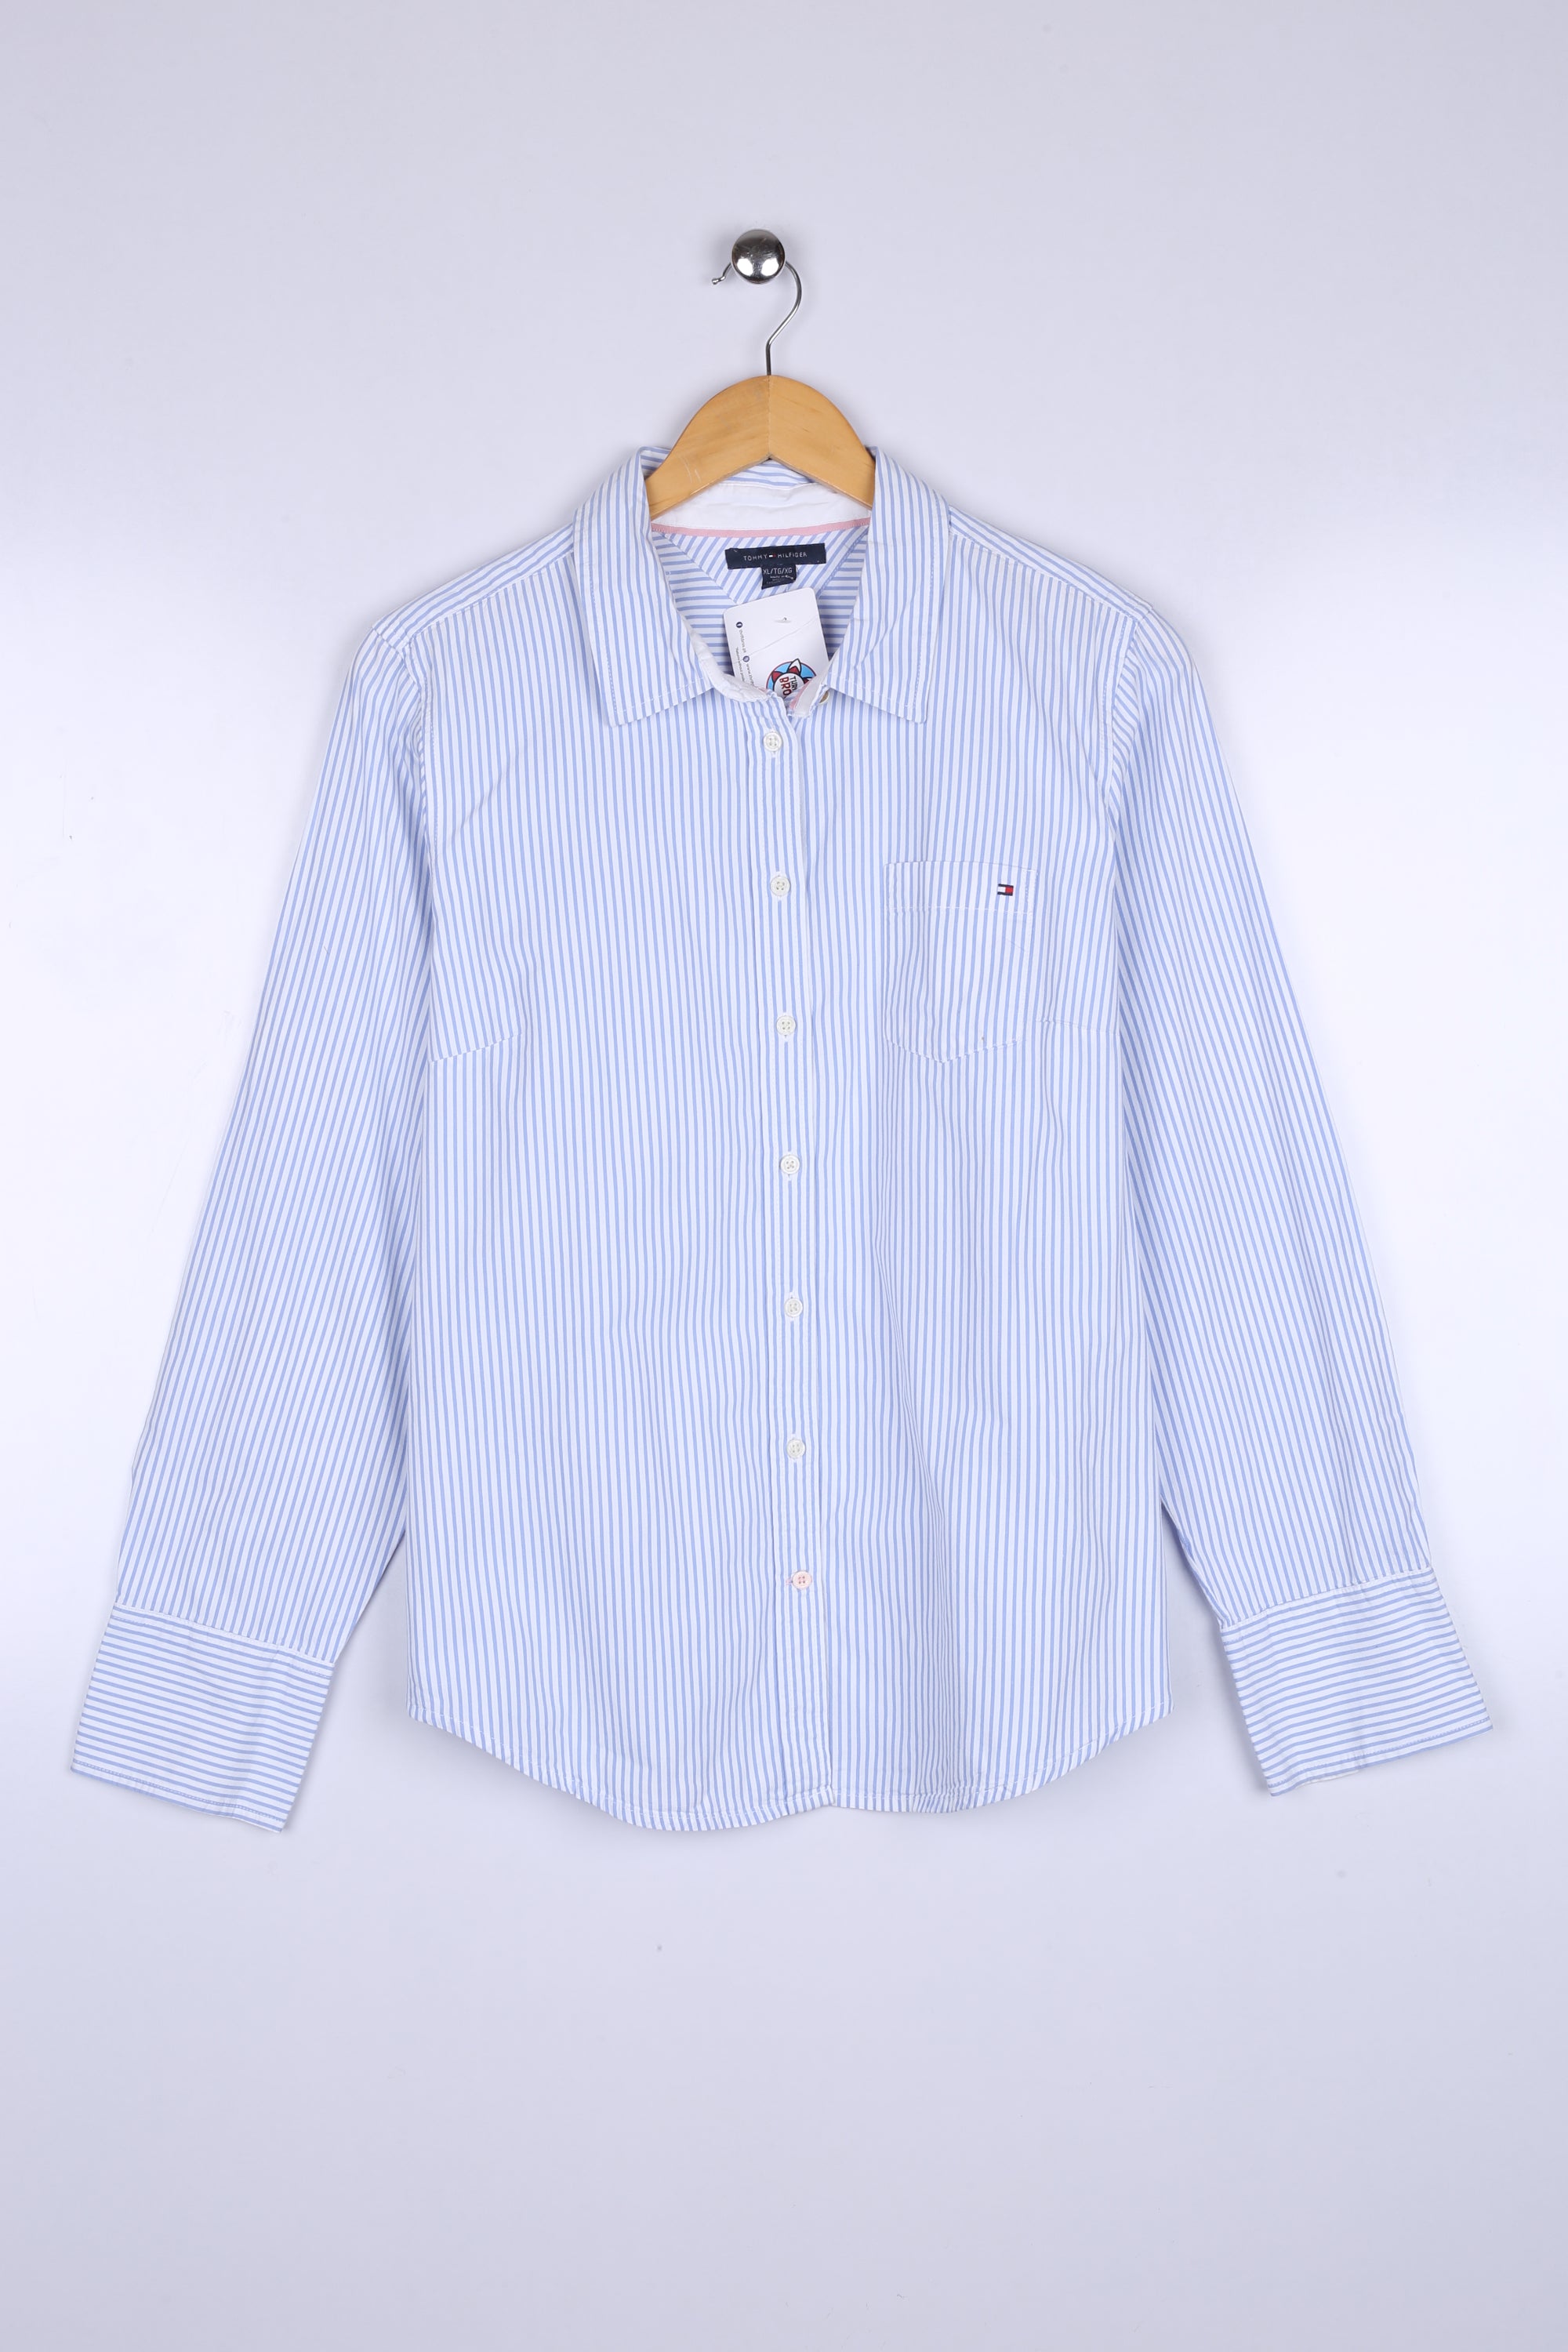 Vintage Tommy Hilfiger Shirt Sky Blue Stripe